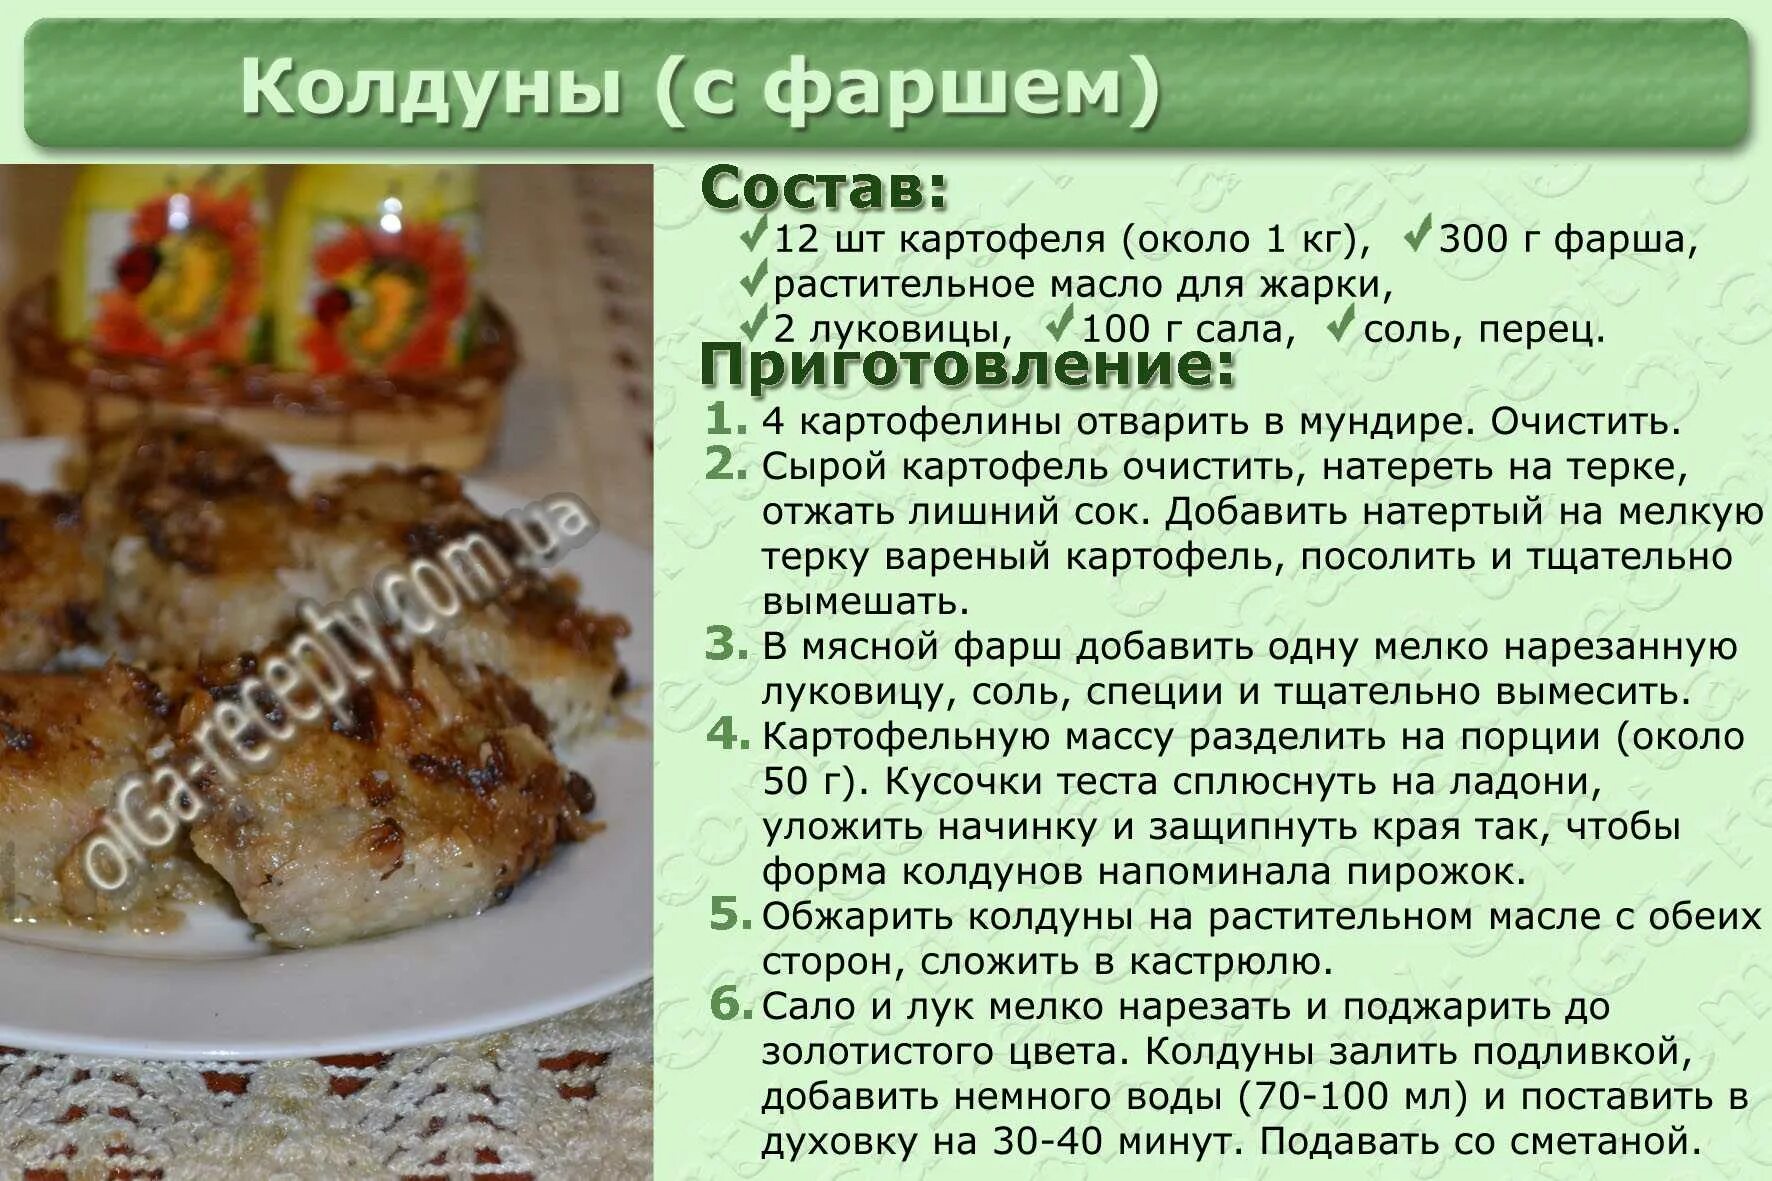 Картинки для рецептов кулинарии. Кулинария рецепты с фотографиями. Картинки рецепты блюд. Рецепты вторых блюд с описанием. Напечатанные рецепты